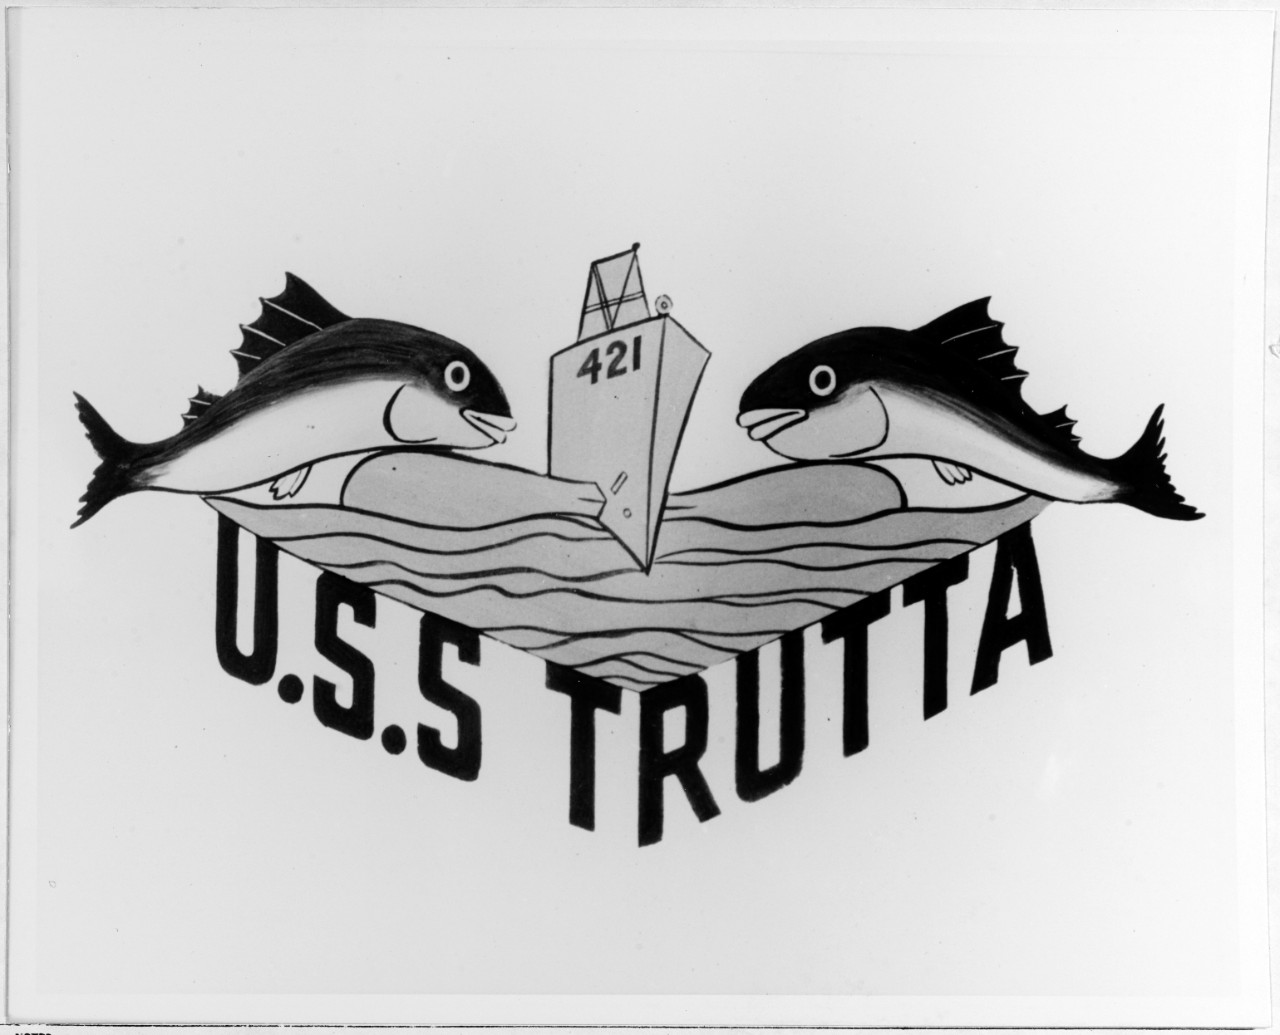 Insignia:  USS TRUTTA (SS-421)